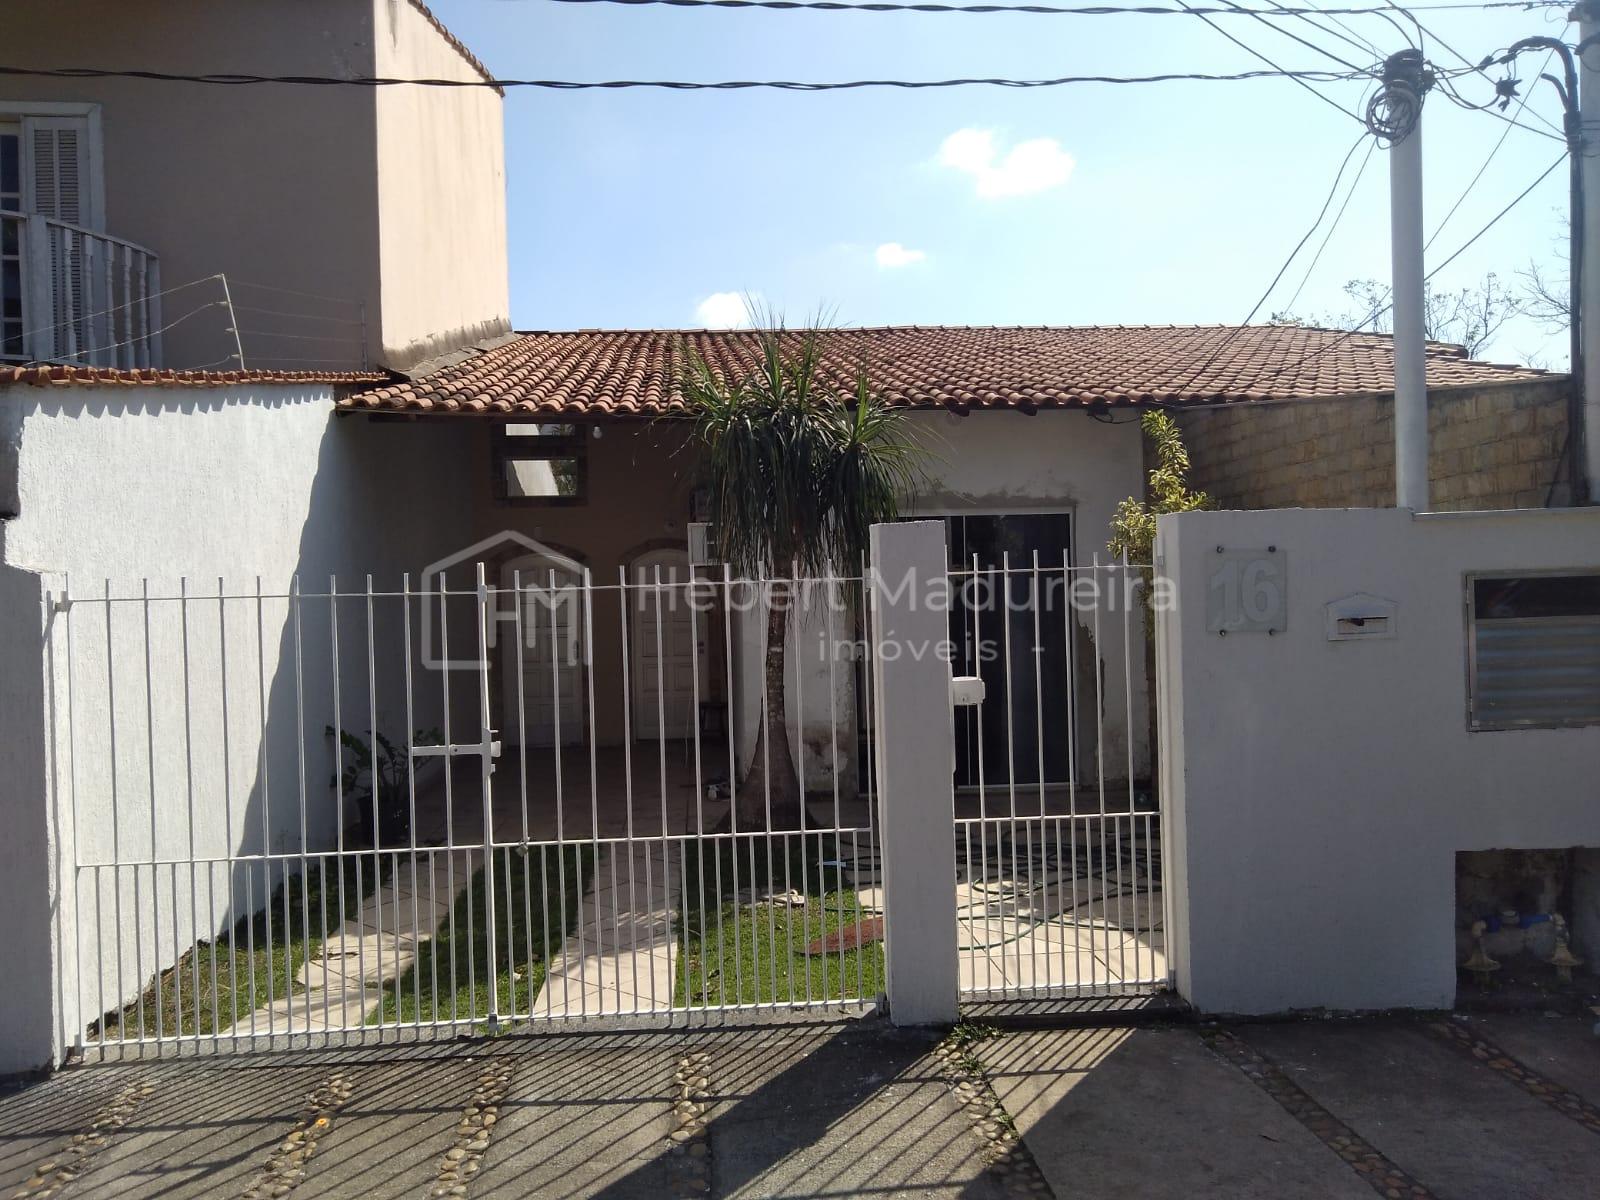 Casa a venda no Jd. Am?lia em Volta Redonda RJ com dois quartos